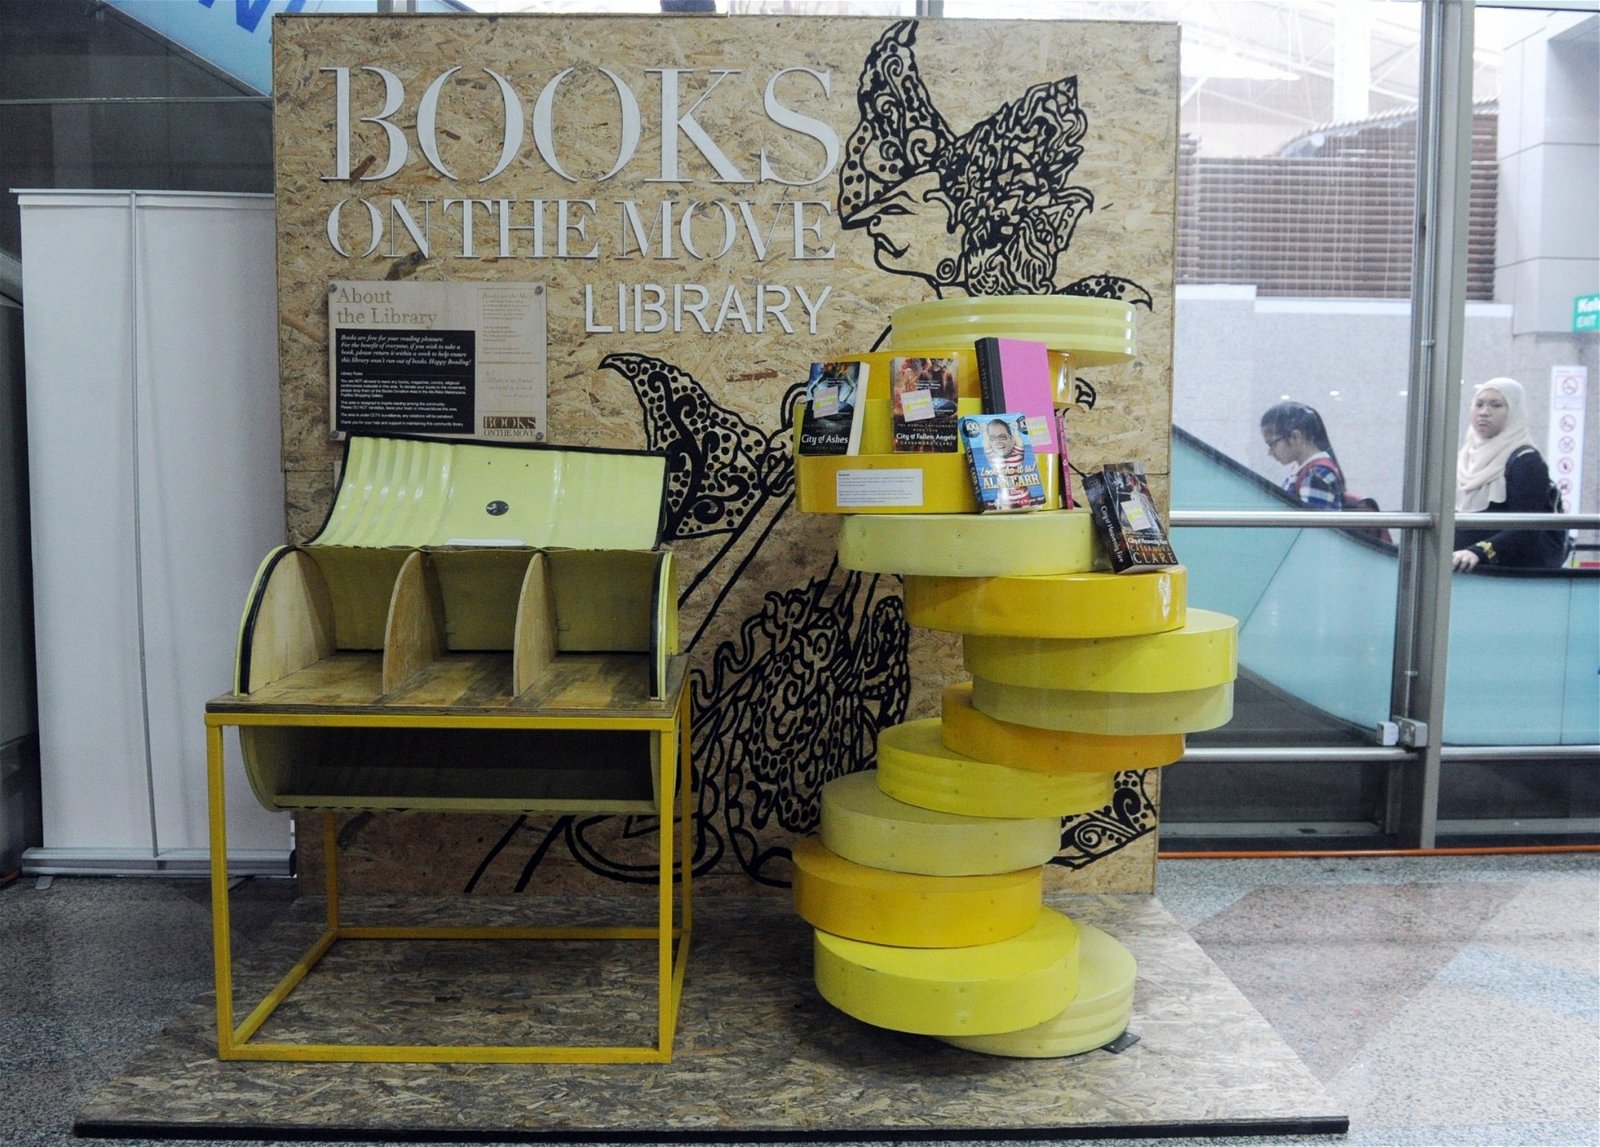 由于本地人对图书共享形式不熟悉，拿取书籍后并未归还，或一次性大量索取书本，导致图书馆的书架经常空置。图为吉隆坡中环交通综合总站的图书馆在星期五的空置状态。